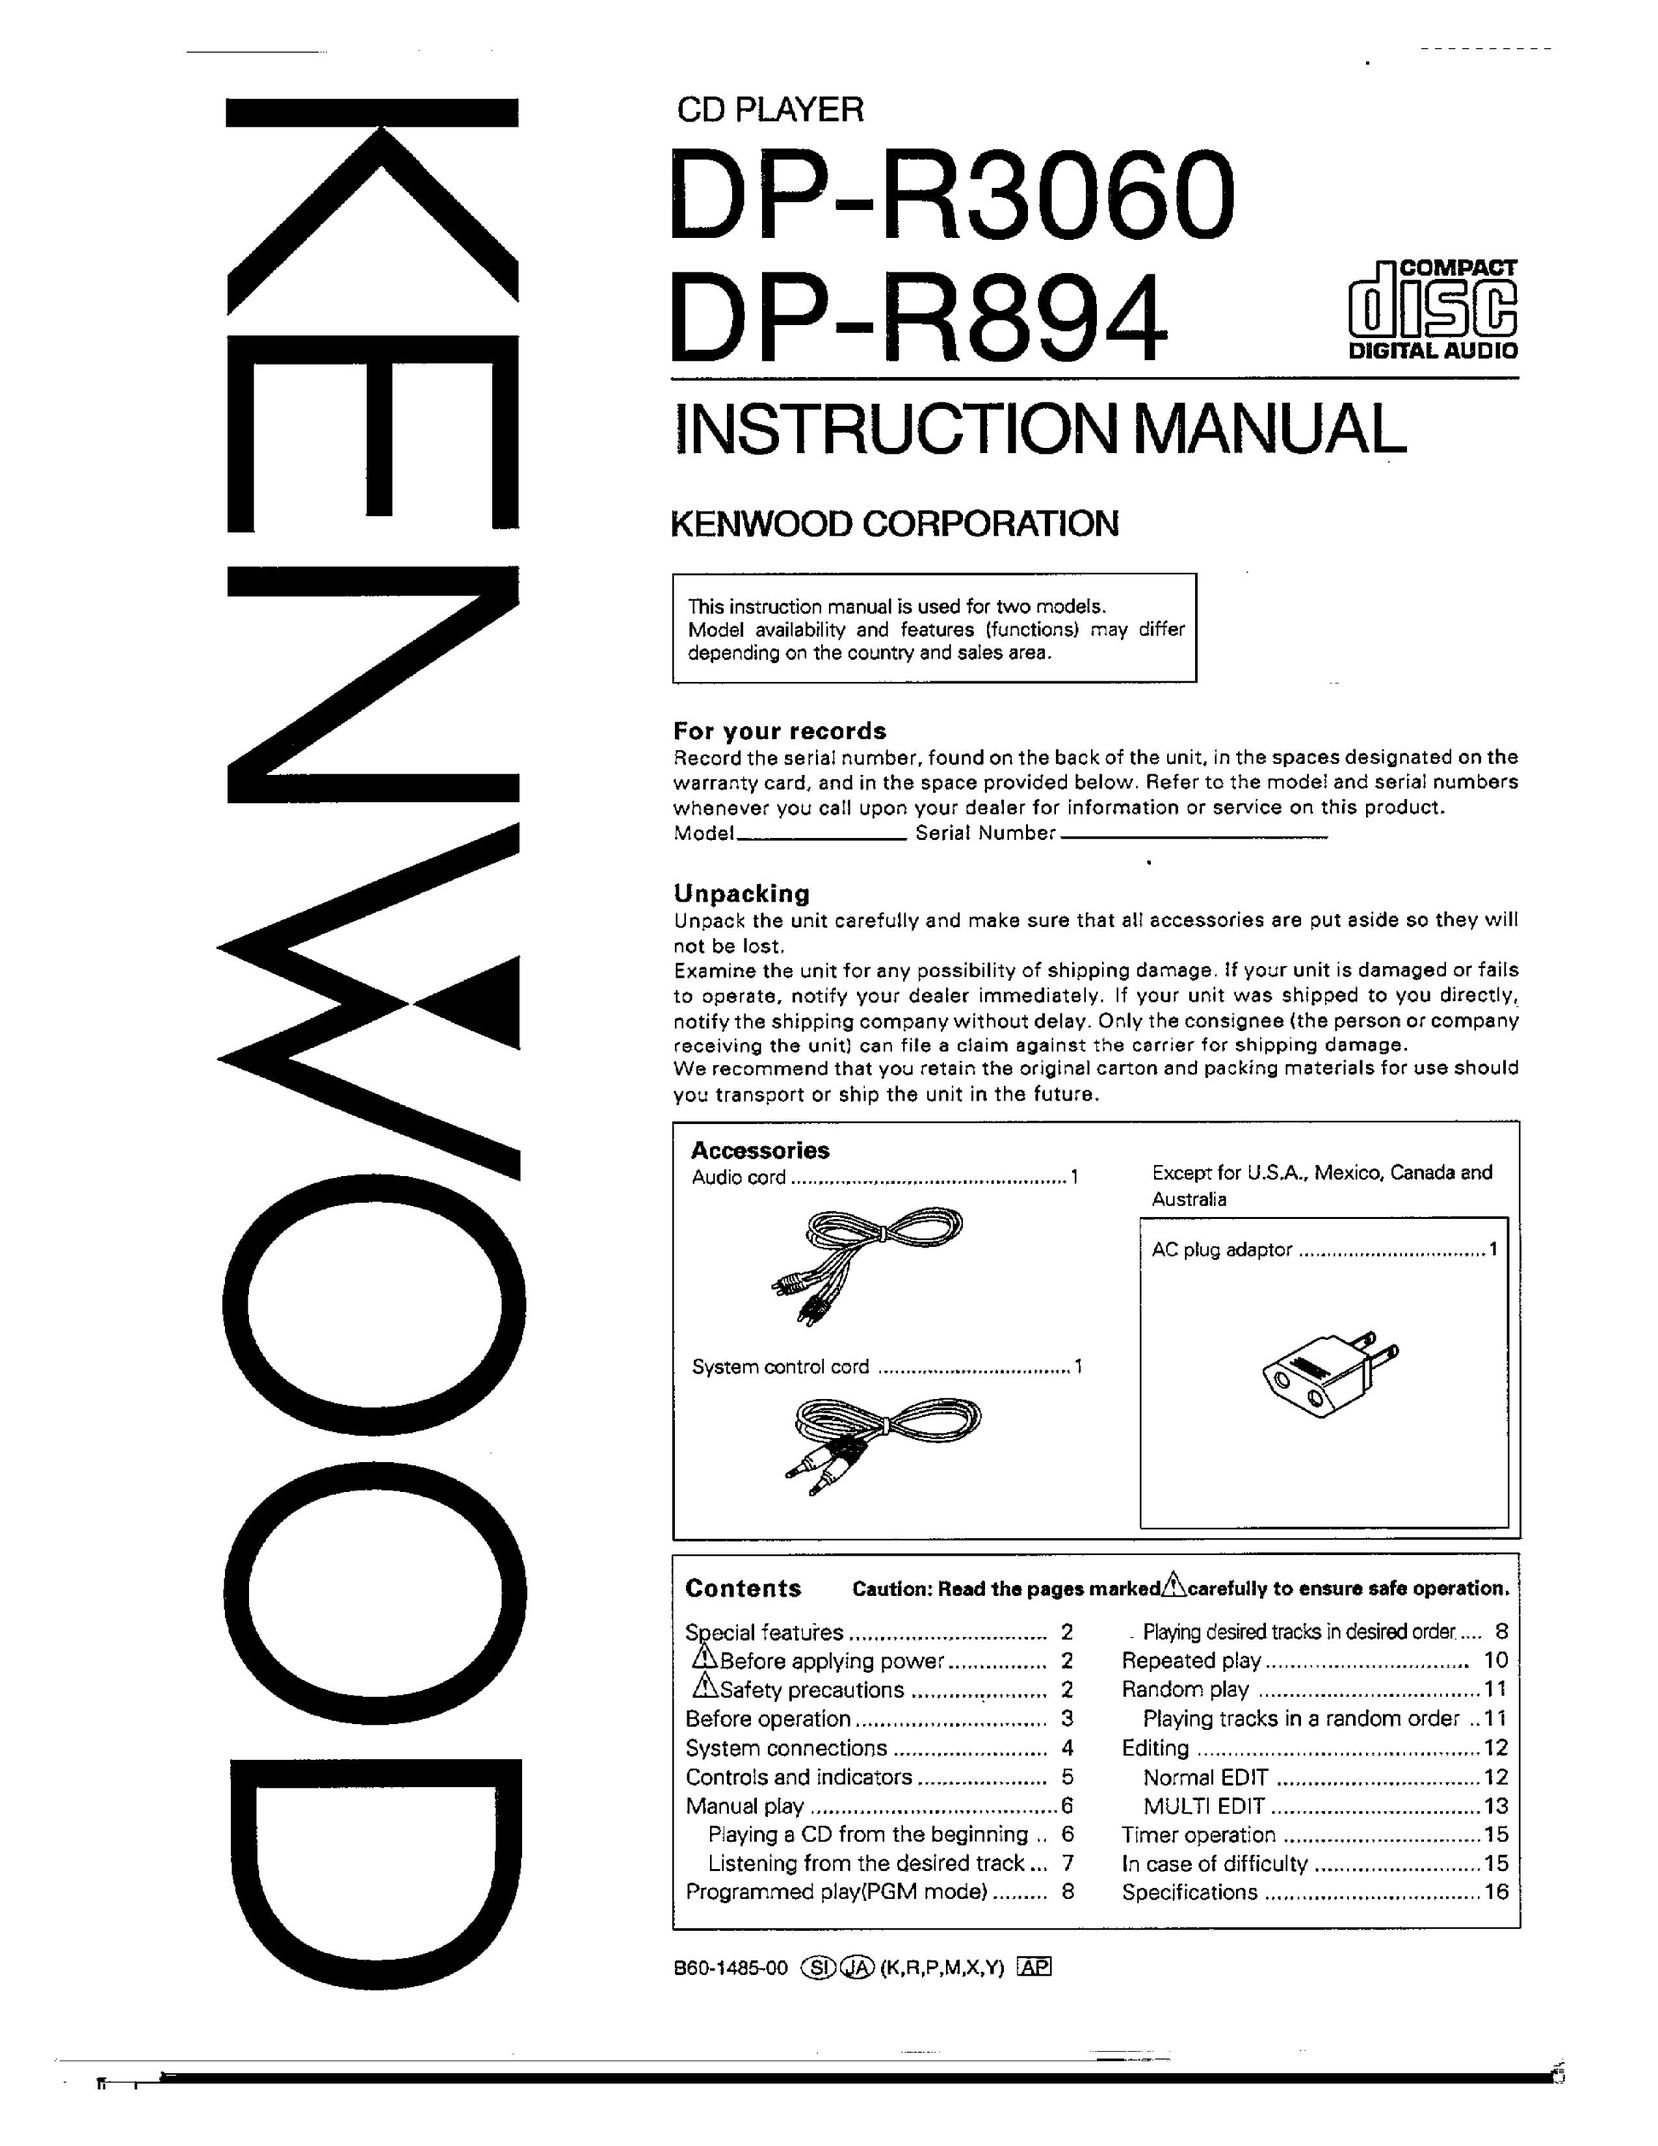 Kenwood DP-R3060 CD Player User Manual